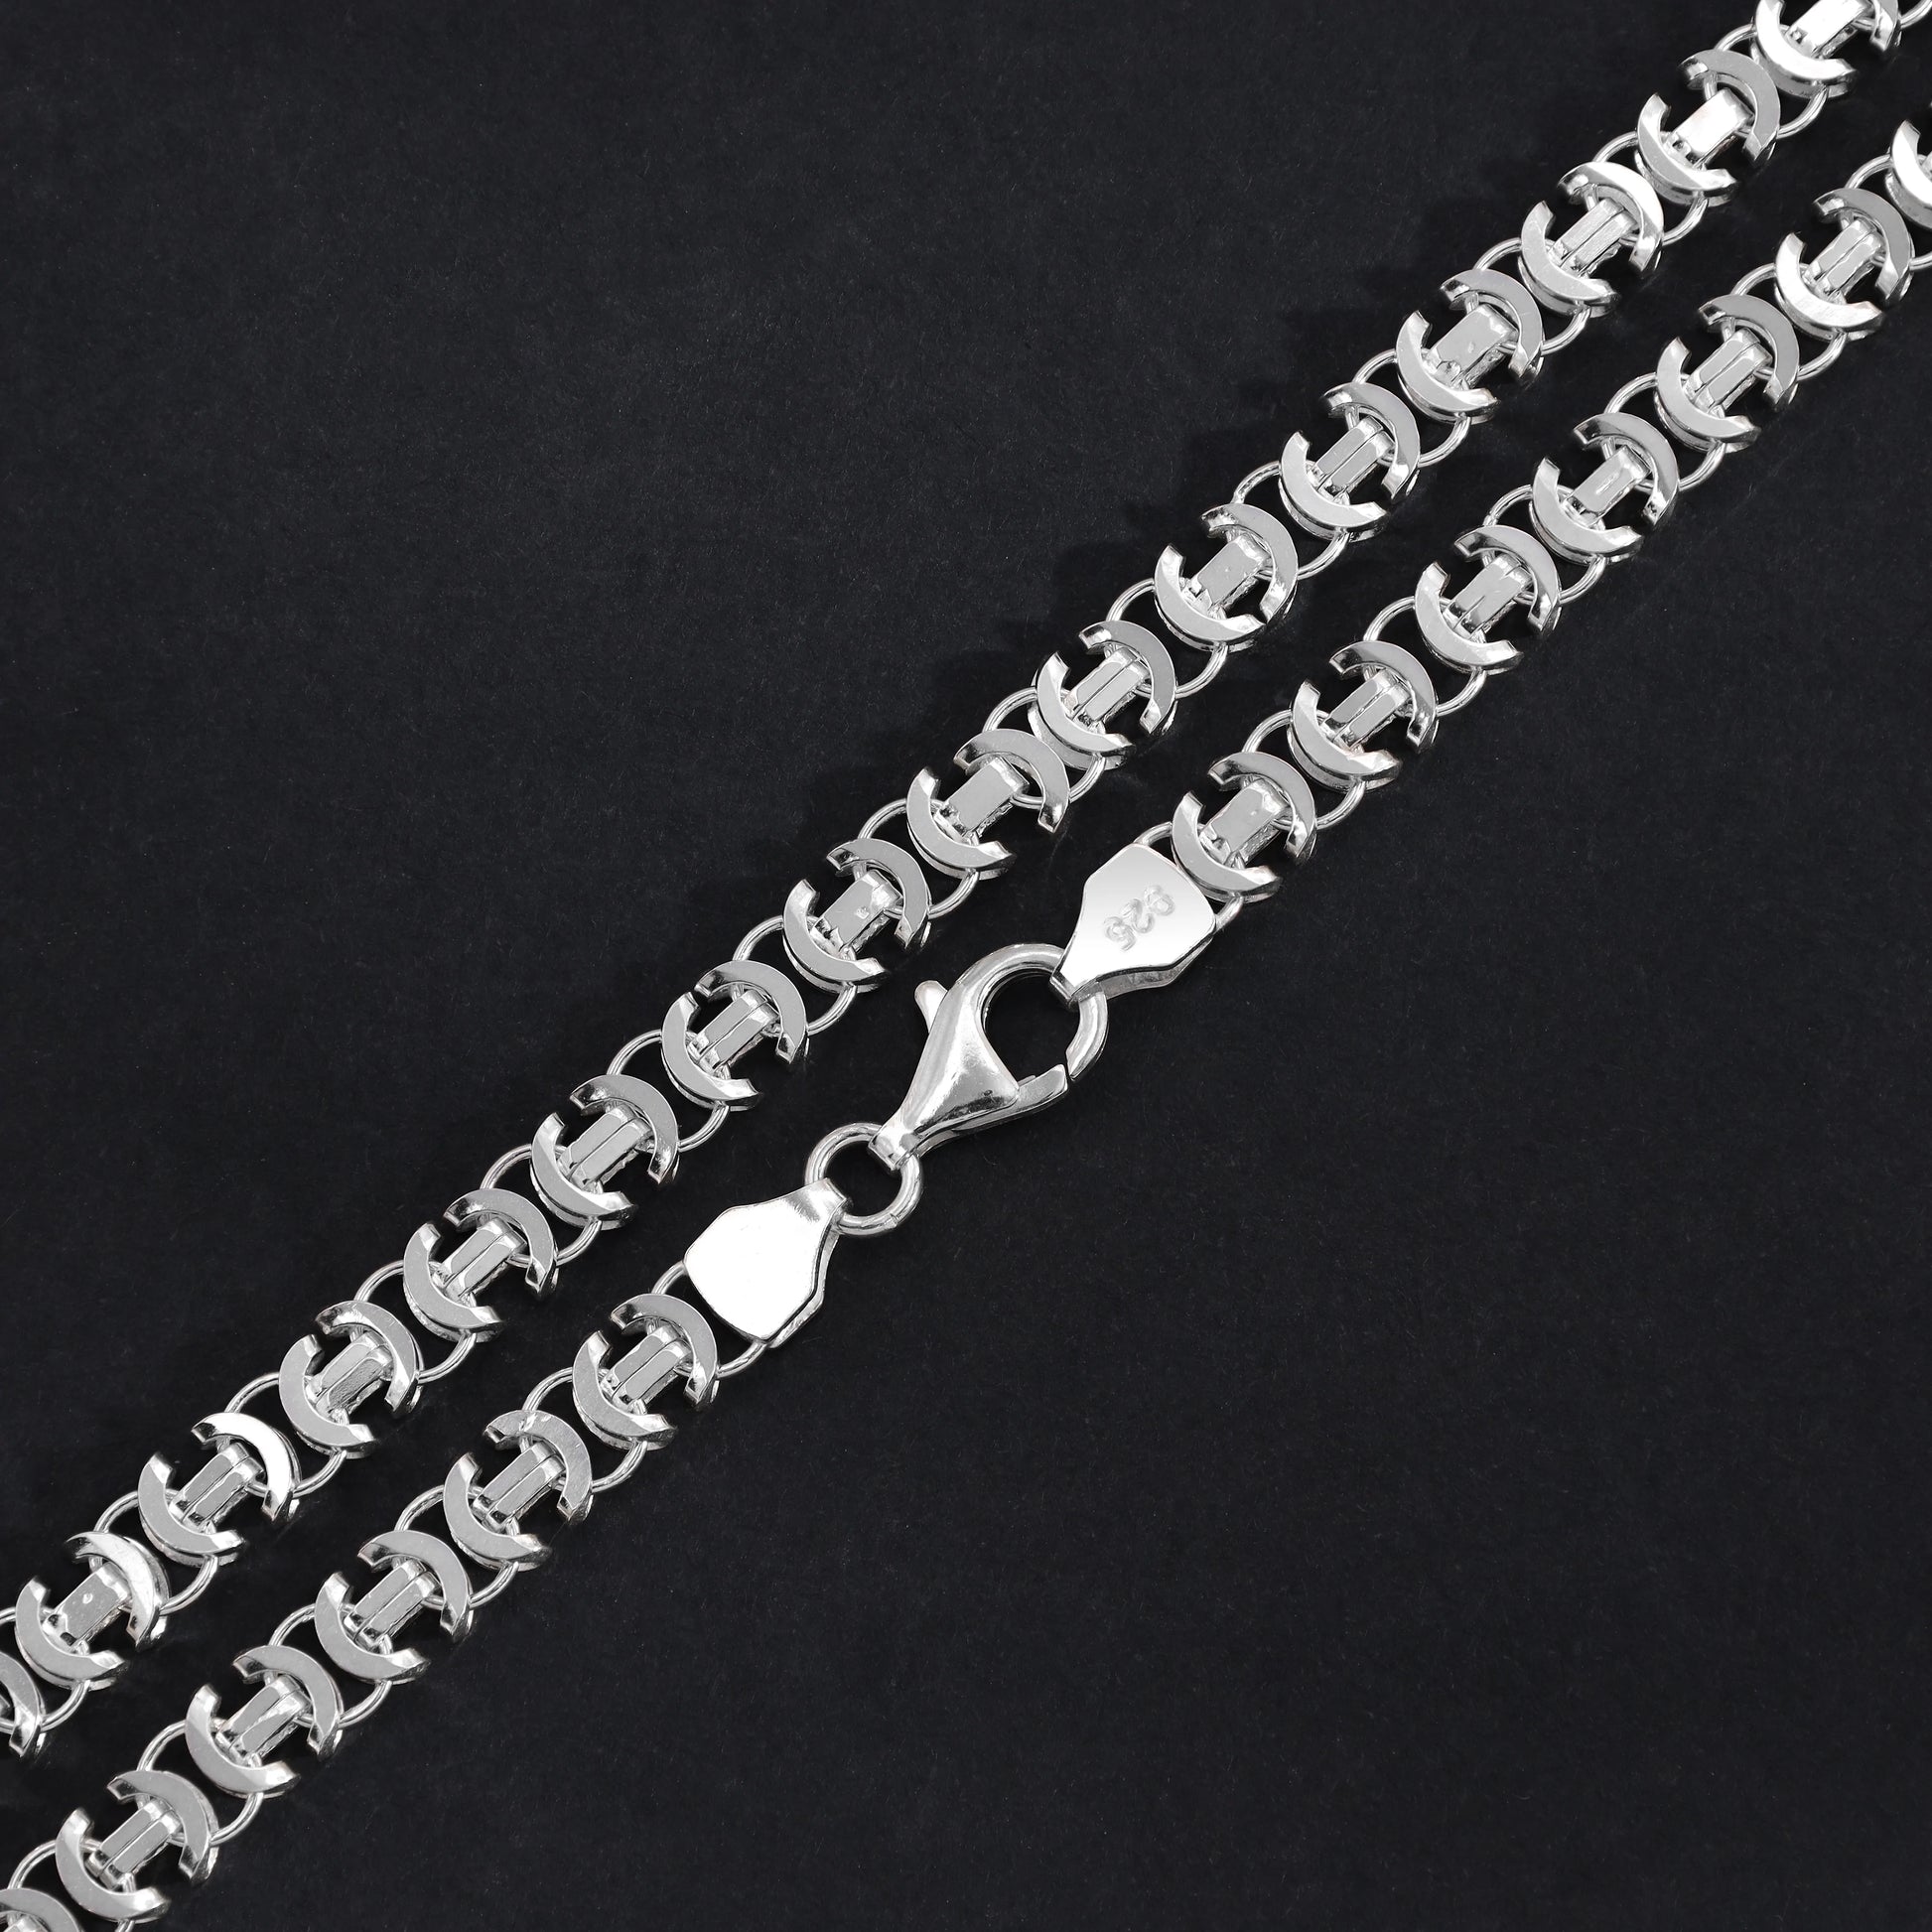 Flache Königskette Etrusker Kette 60cm lang 6mm breit 925 Sterling Silber (K854) - Taipan Schmuck